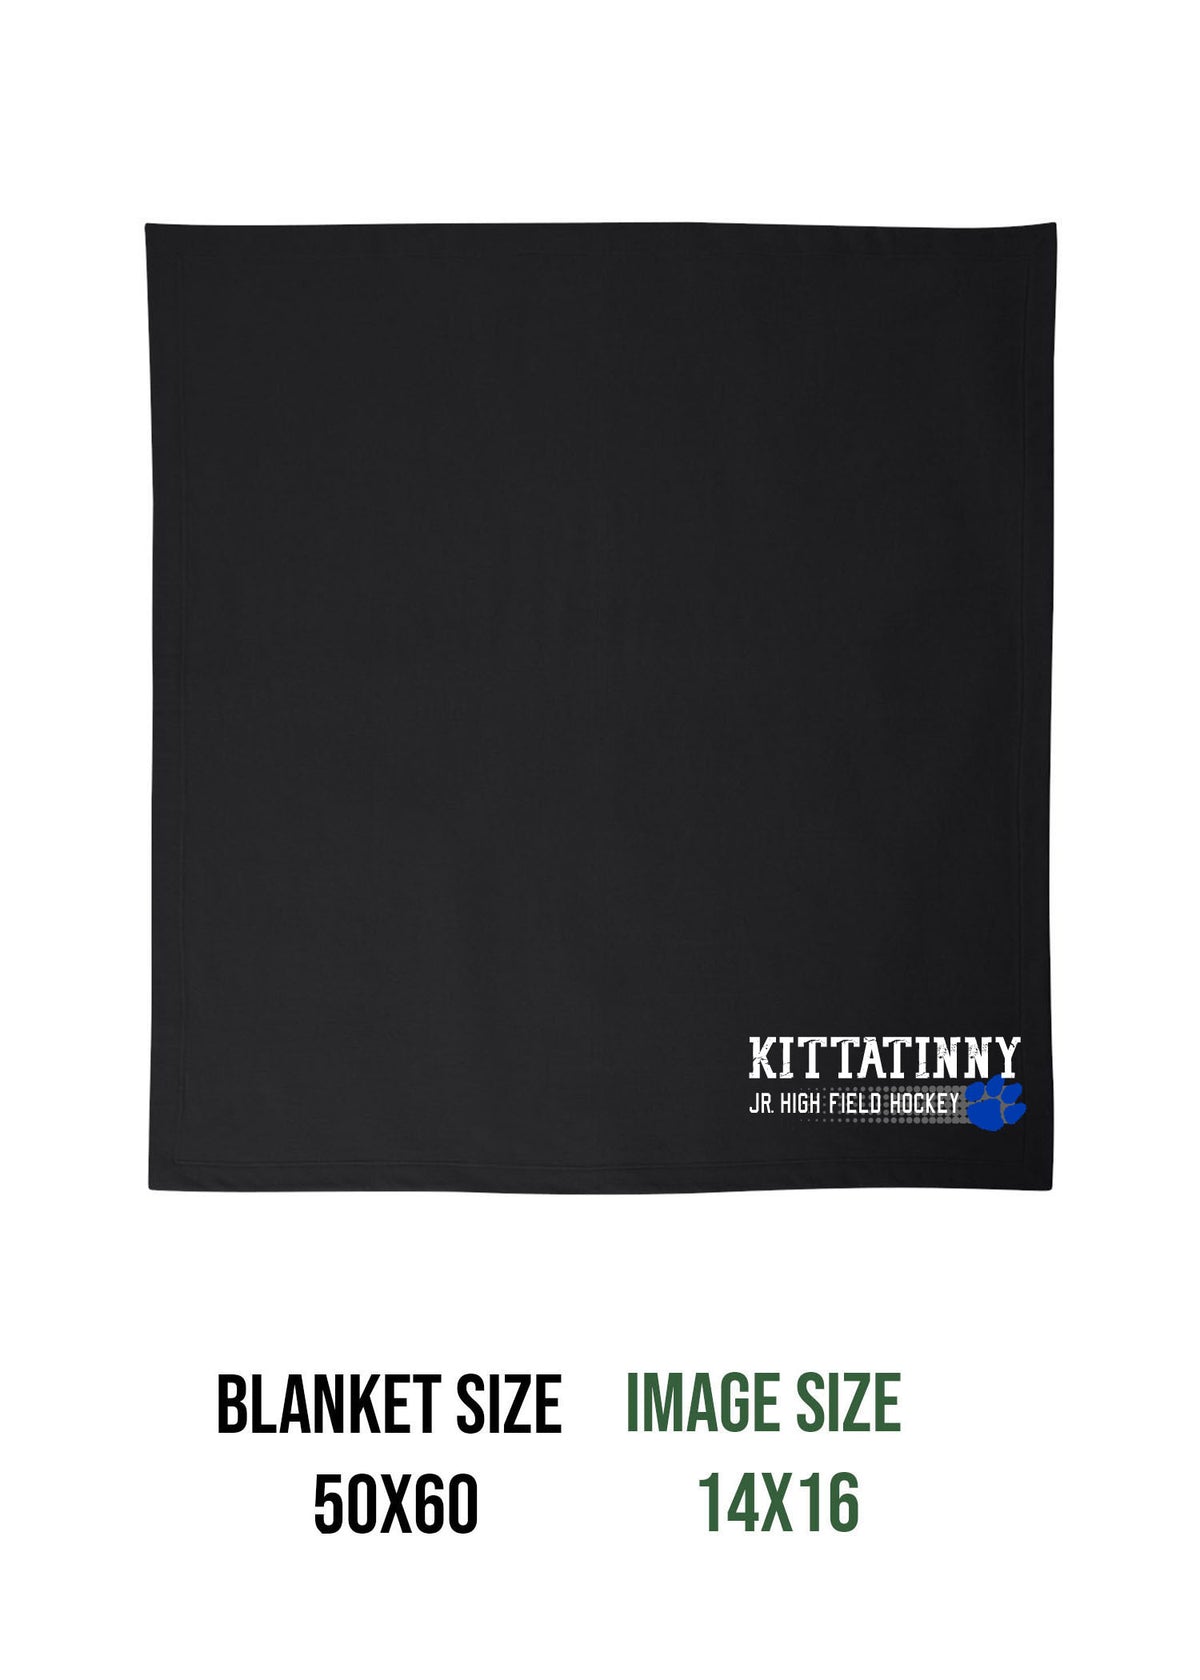 Kittatinny Jr High Field Hockey Design 3 Blanket